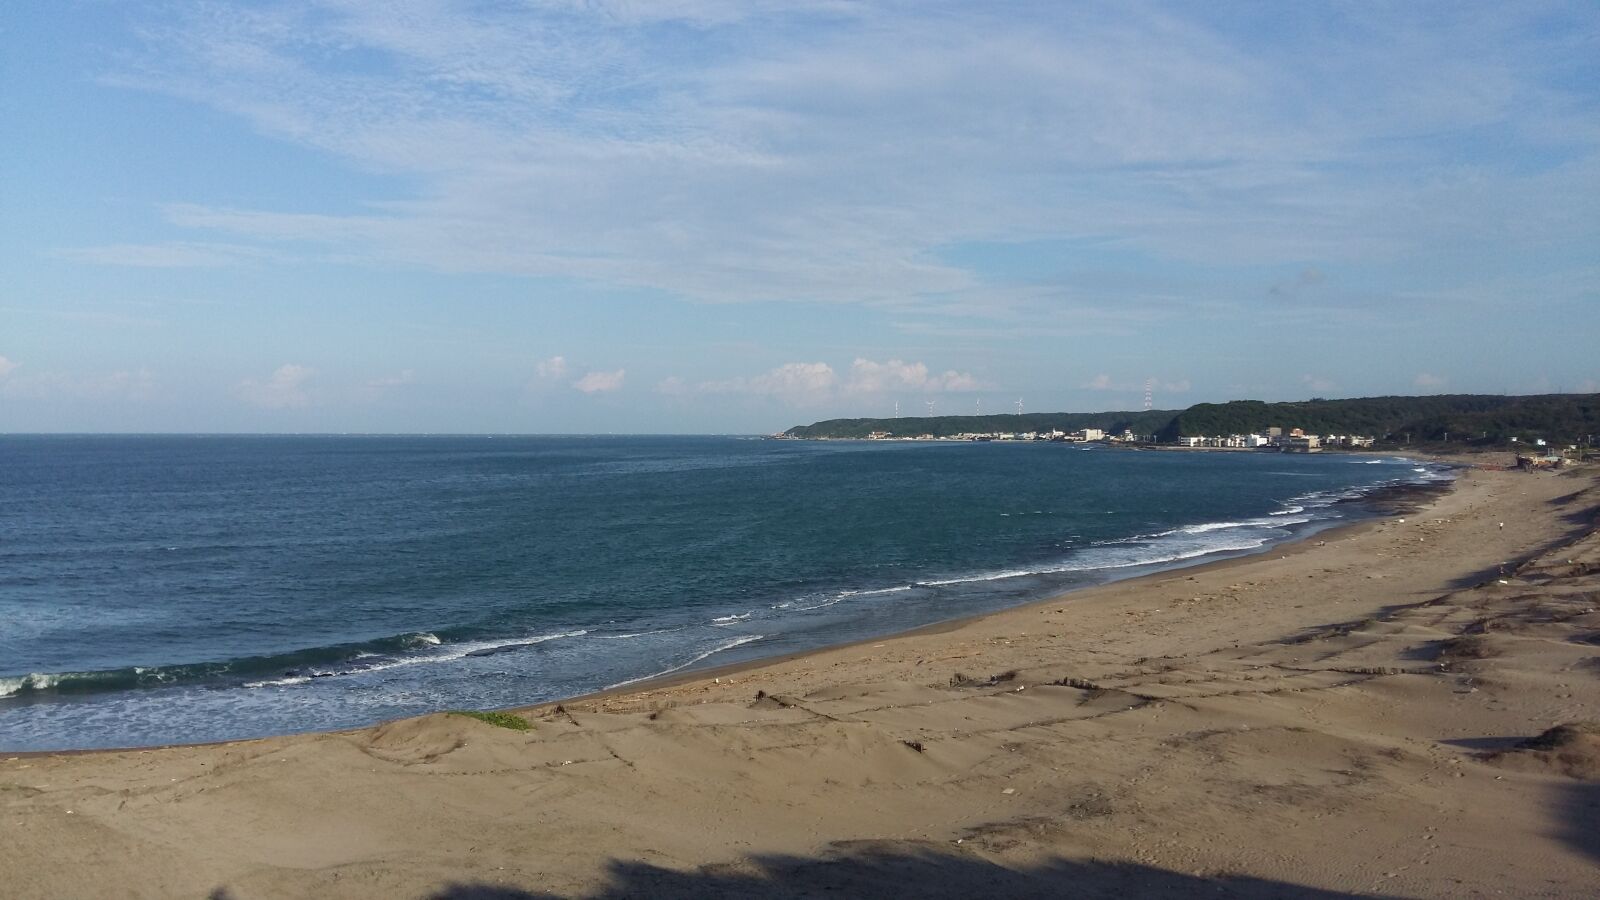 Samsung Galaxy A7 sample photo. Sky, beach, ocean photography